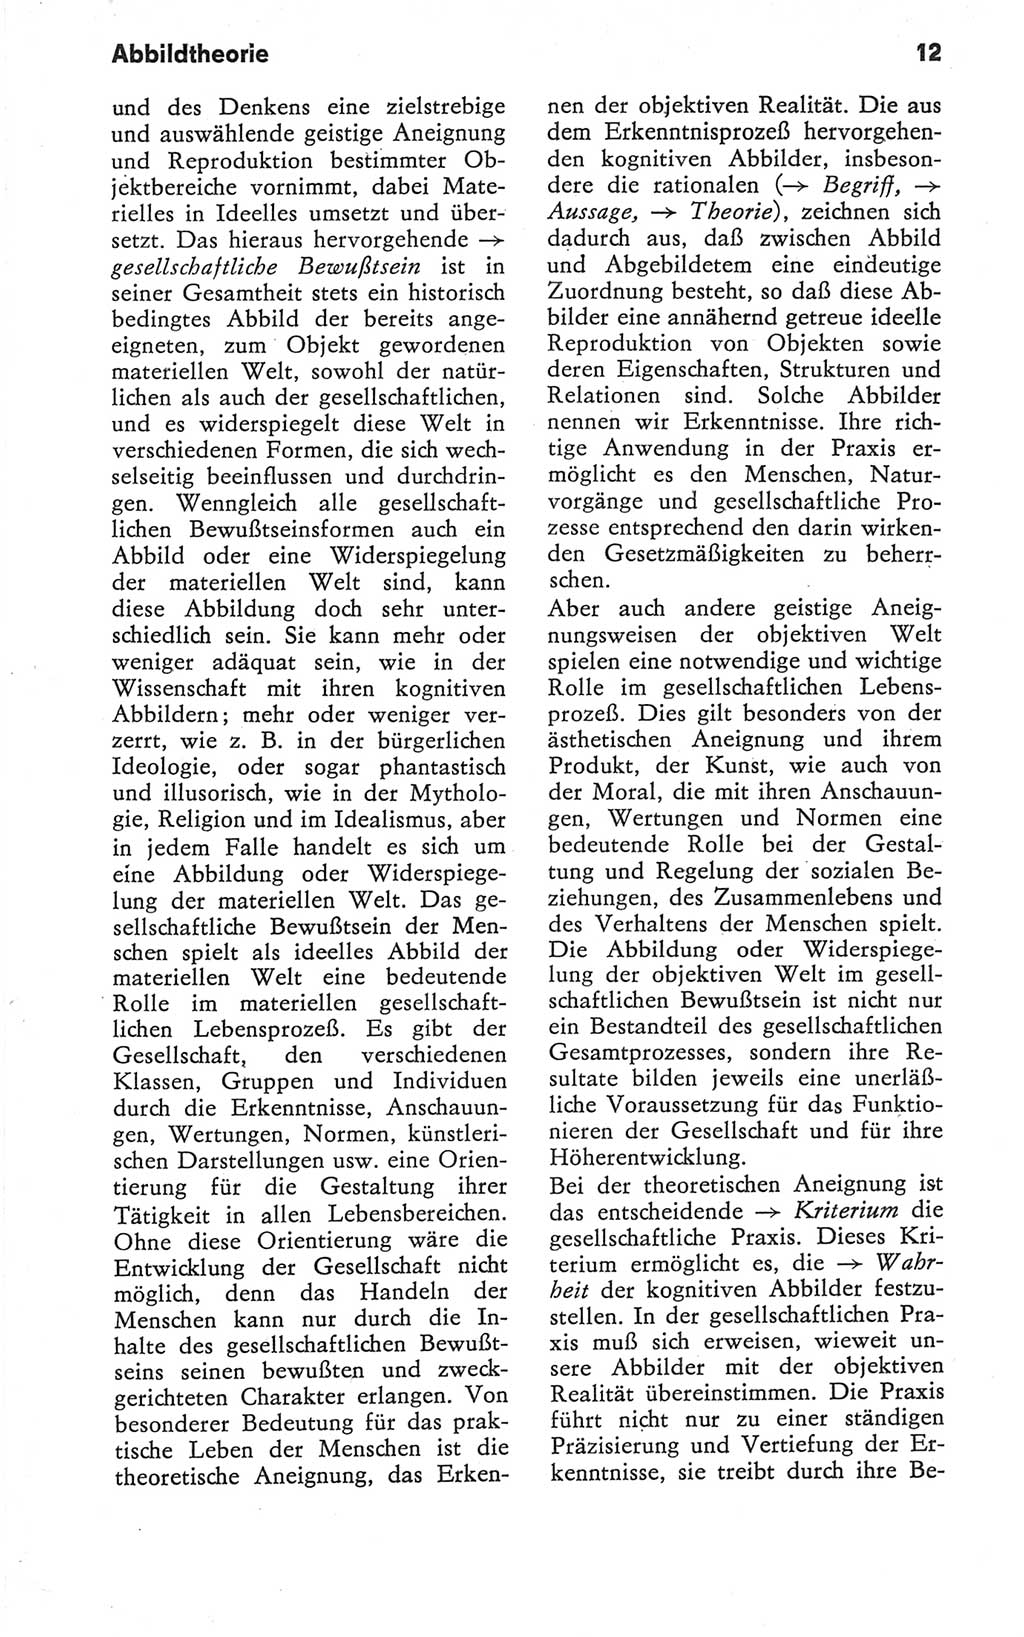 Kleines Wörterbuch der marxistisch-leninistischen Philosophie [Deutsche Demokratische Republik (DDR)] 1979, Seite 12 (Kl. Wb. ML Phil. DDR 1979, S. 12)